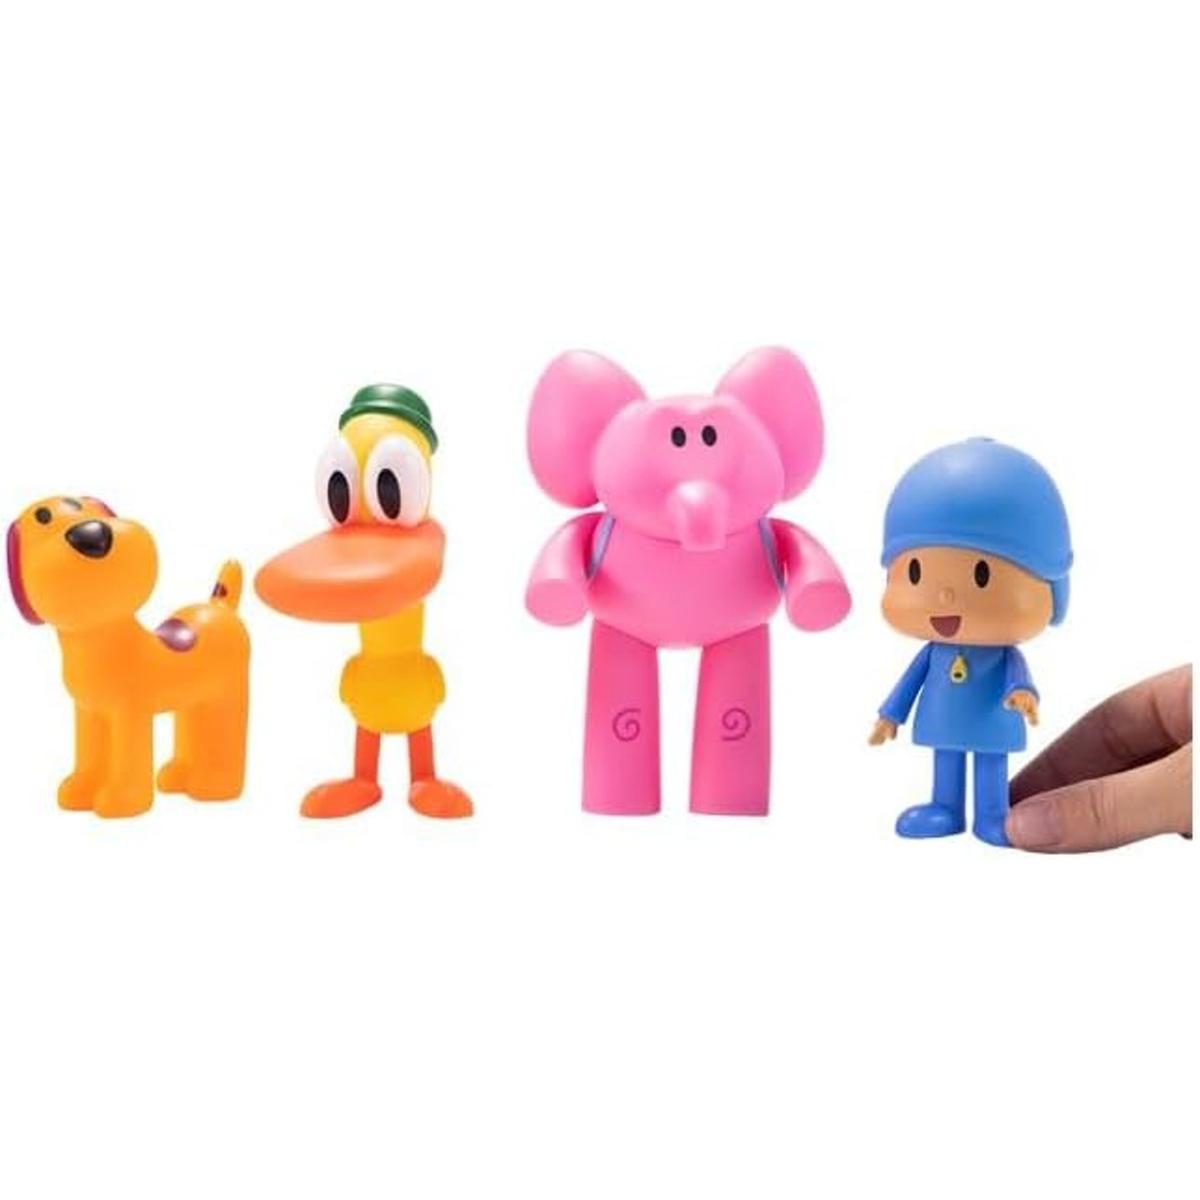 Sorteo Bandai - Set de juguetes Pocoyo